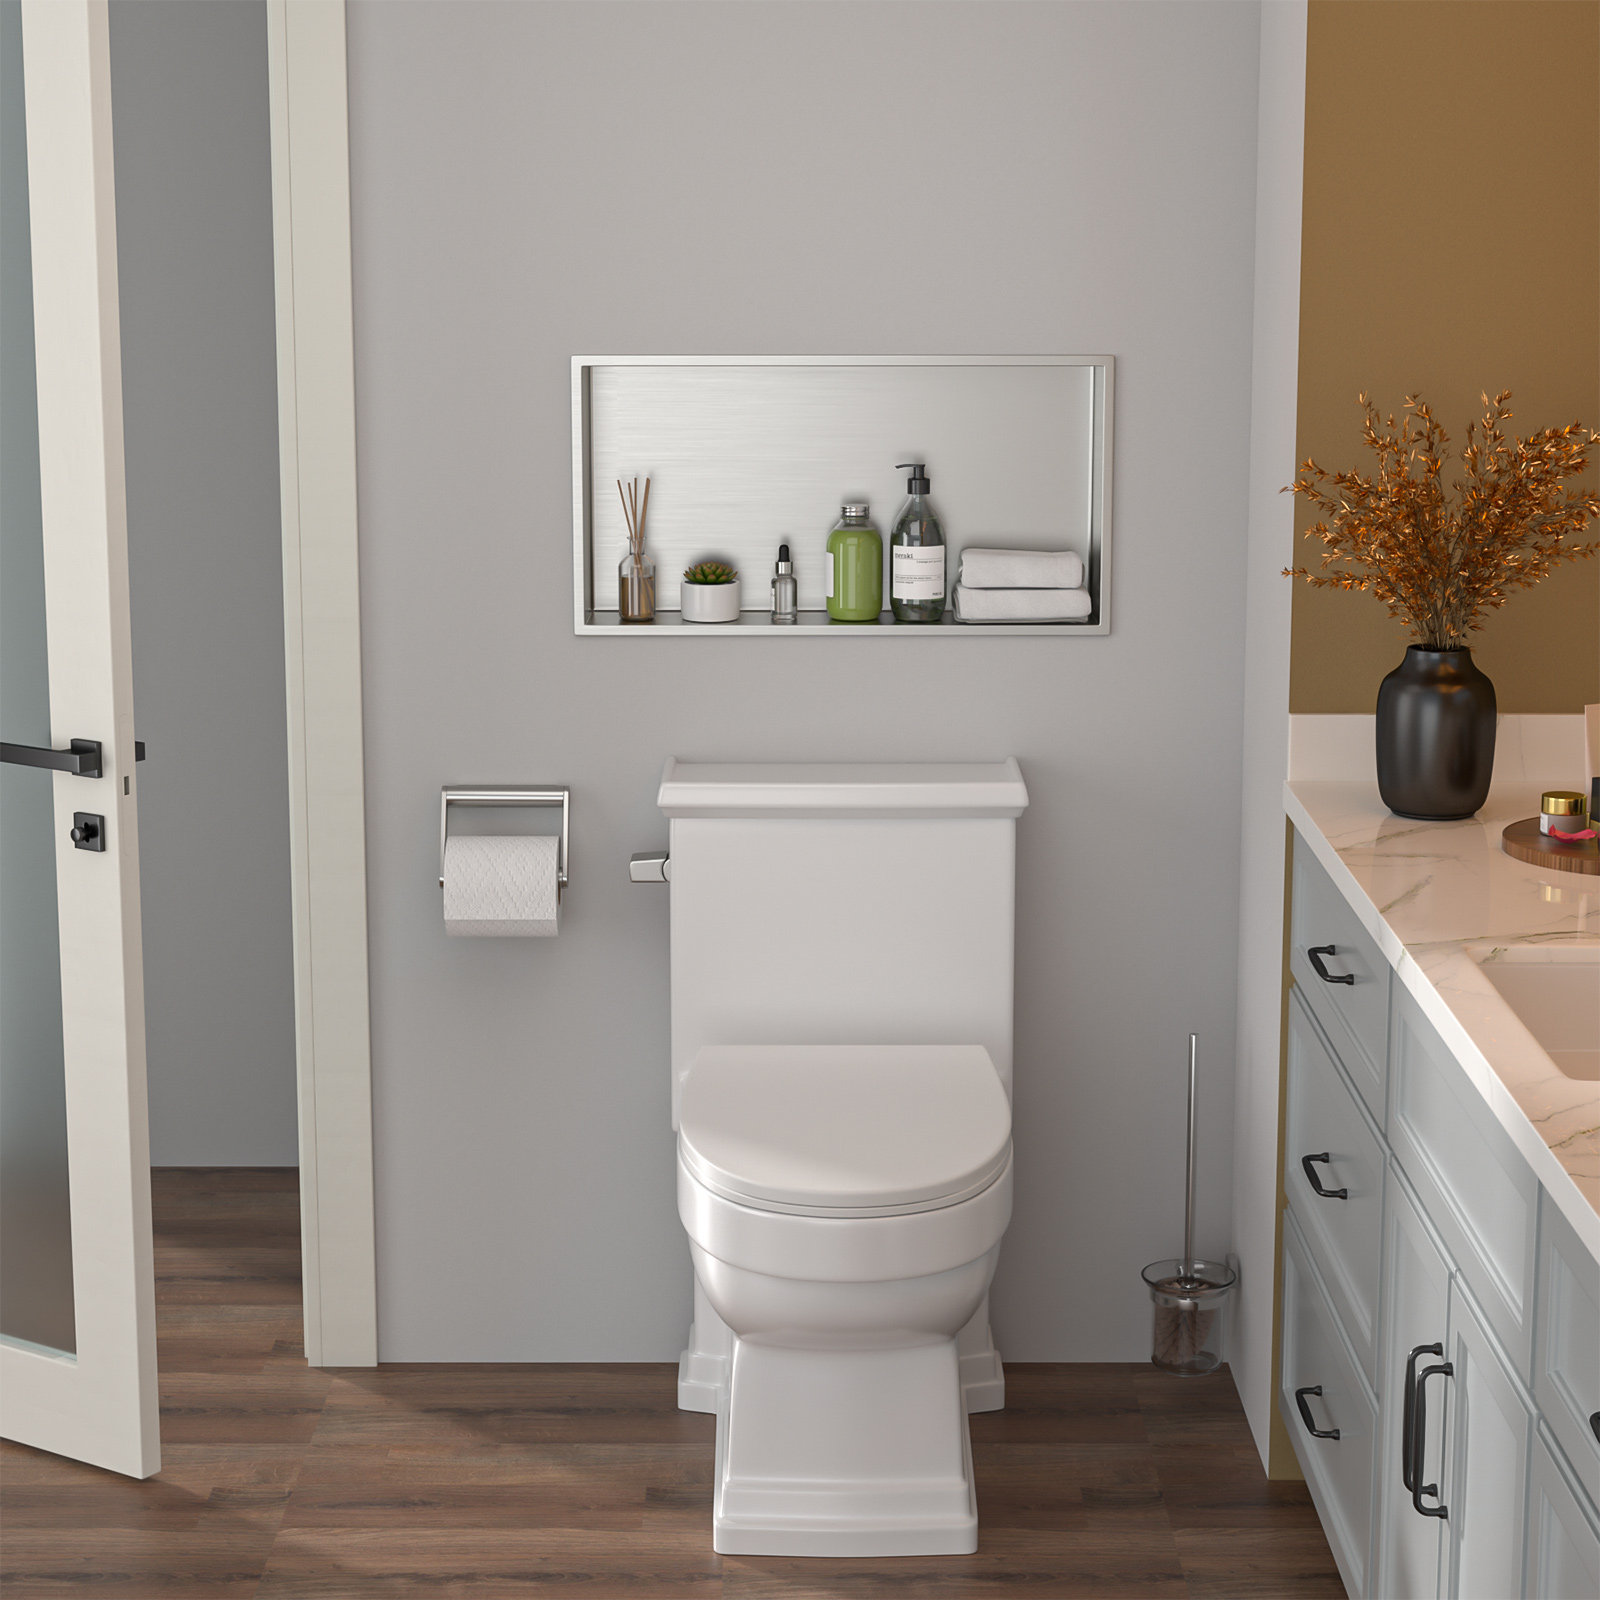 https://assets.wfcdn.com/im/69925620/compr-r85/2543/254371484/25-x-13-shower-niche-stainless-steel-bathroom-niche-bathroom-storage-shelf-niche-wall-niche.jpg